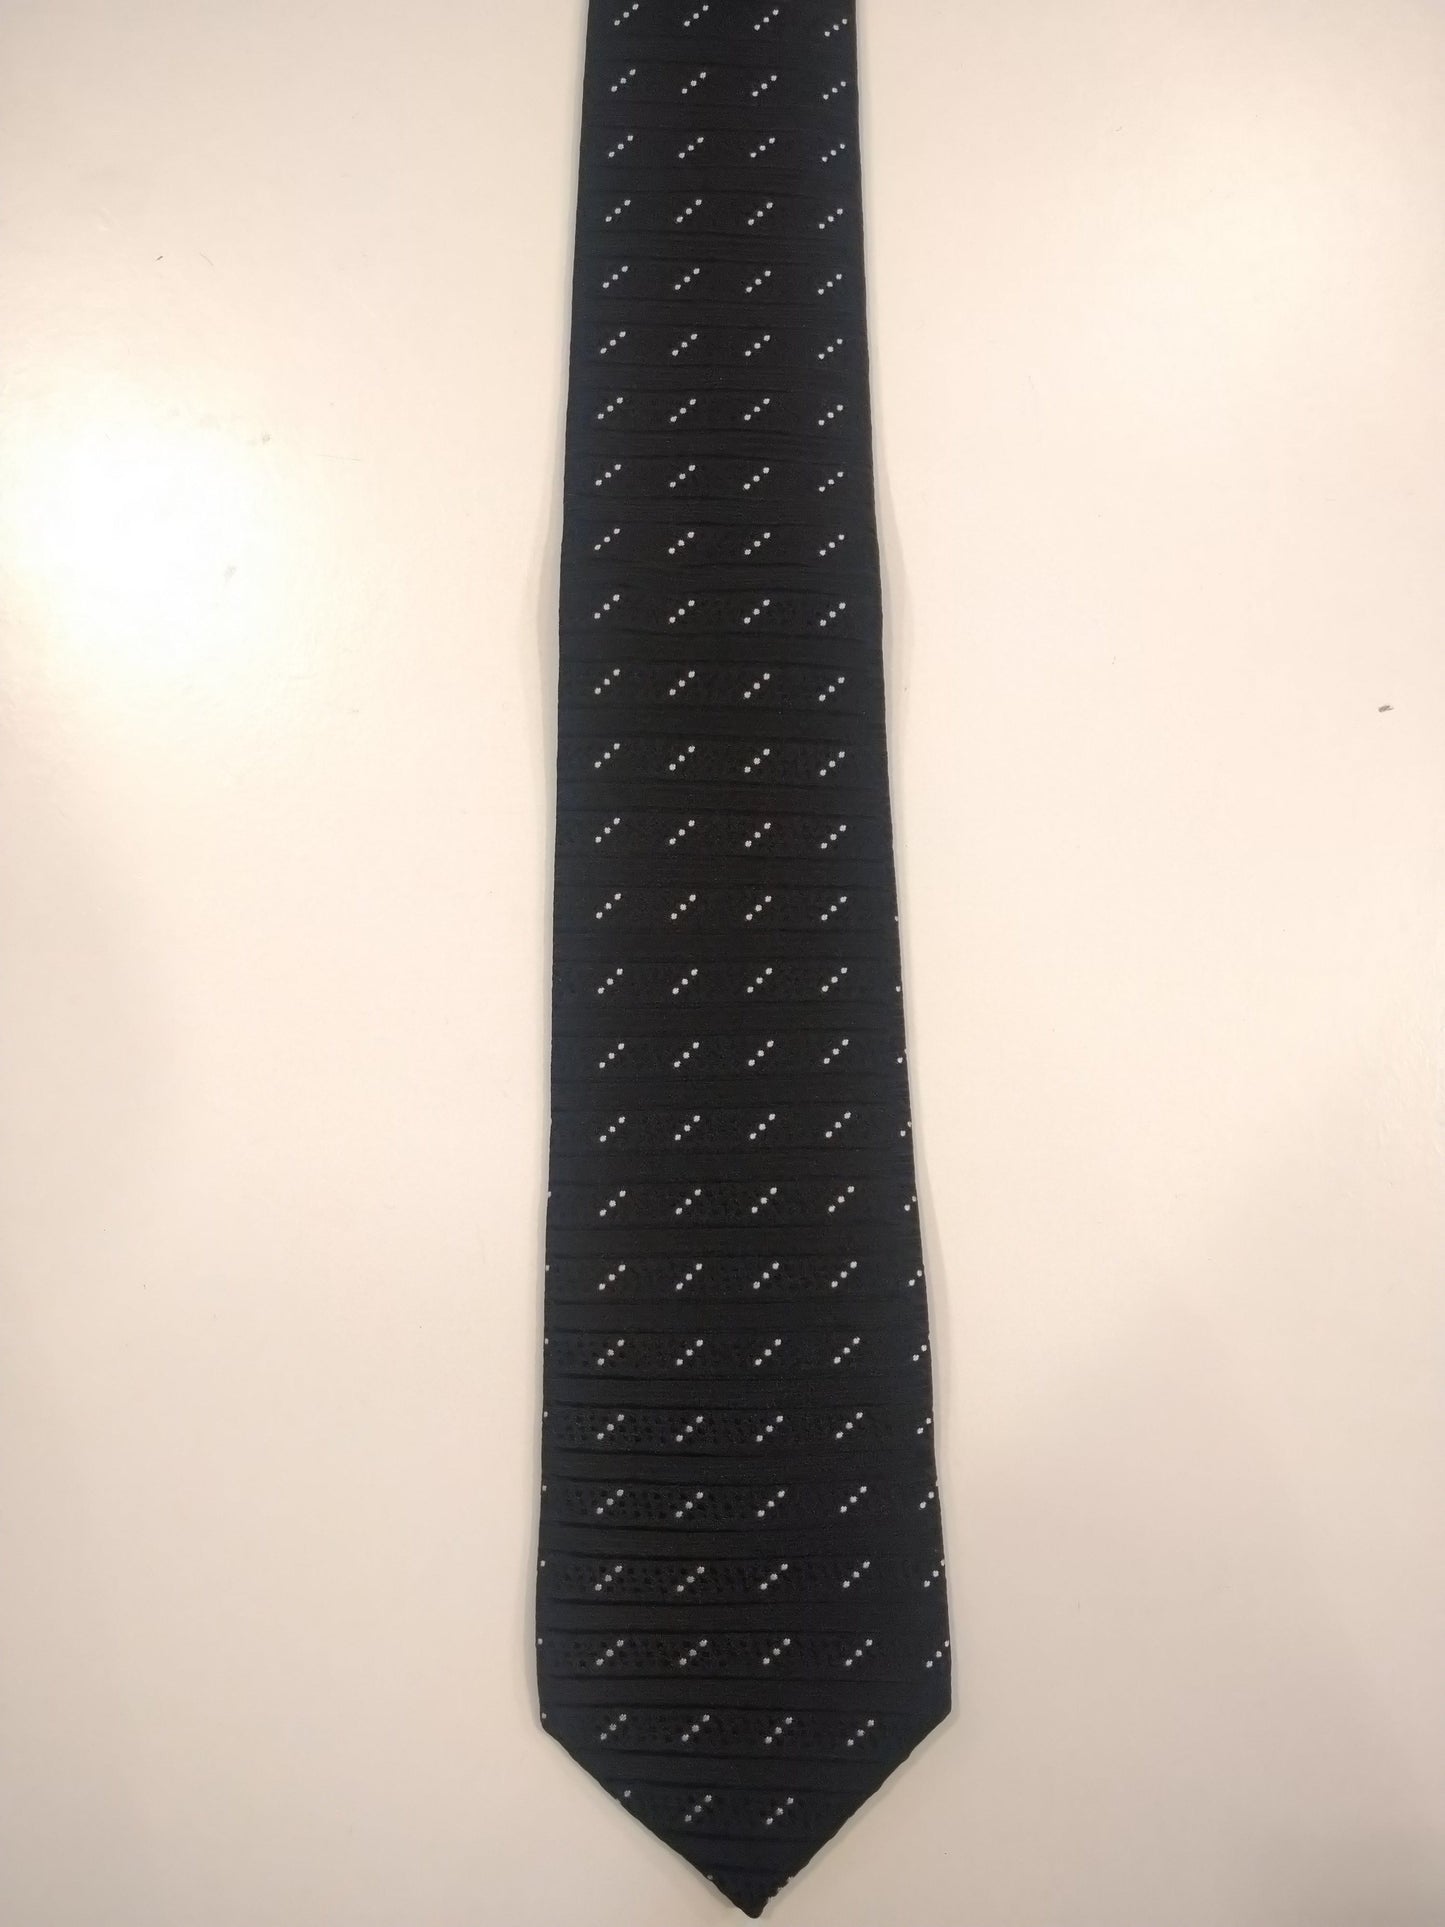 Dragon polyester stropdas. Zwart wit voelbaar motief.